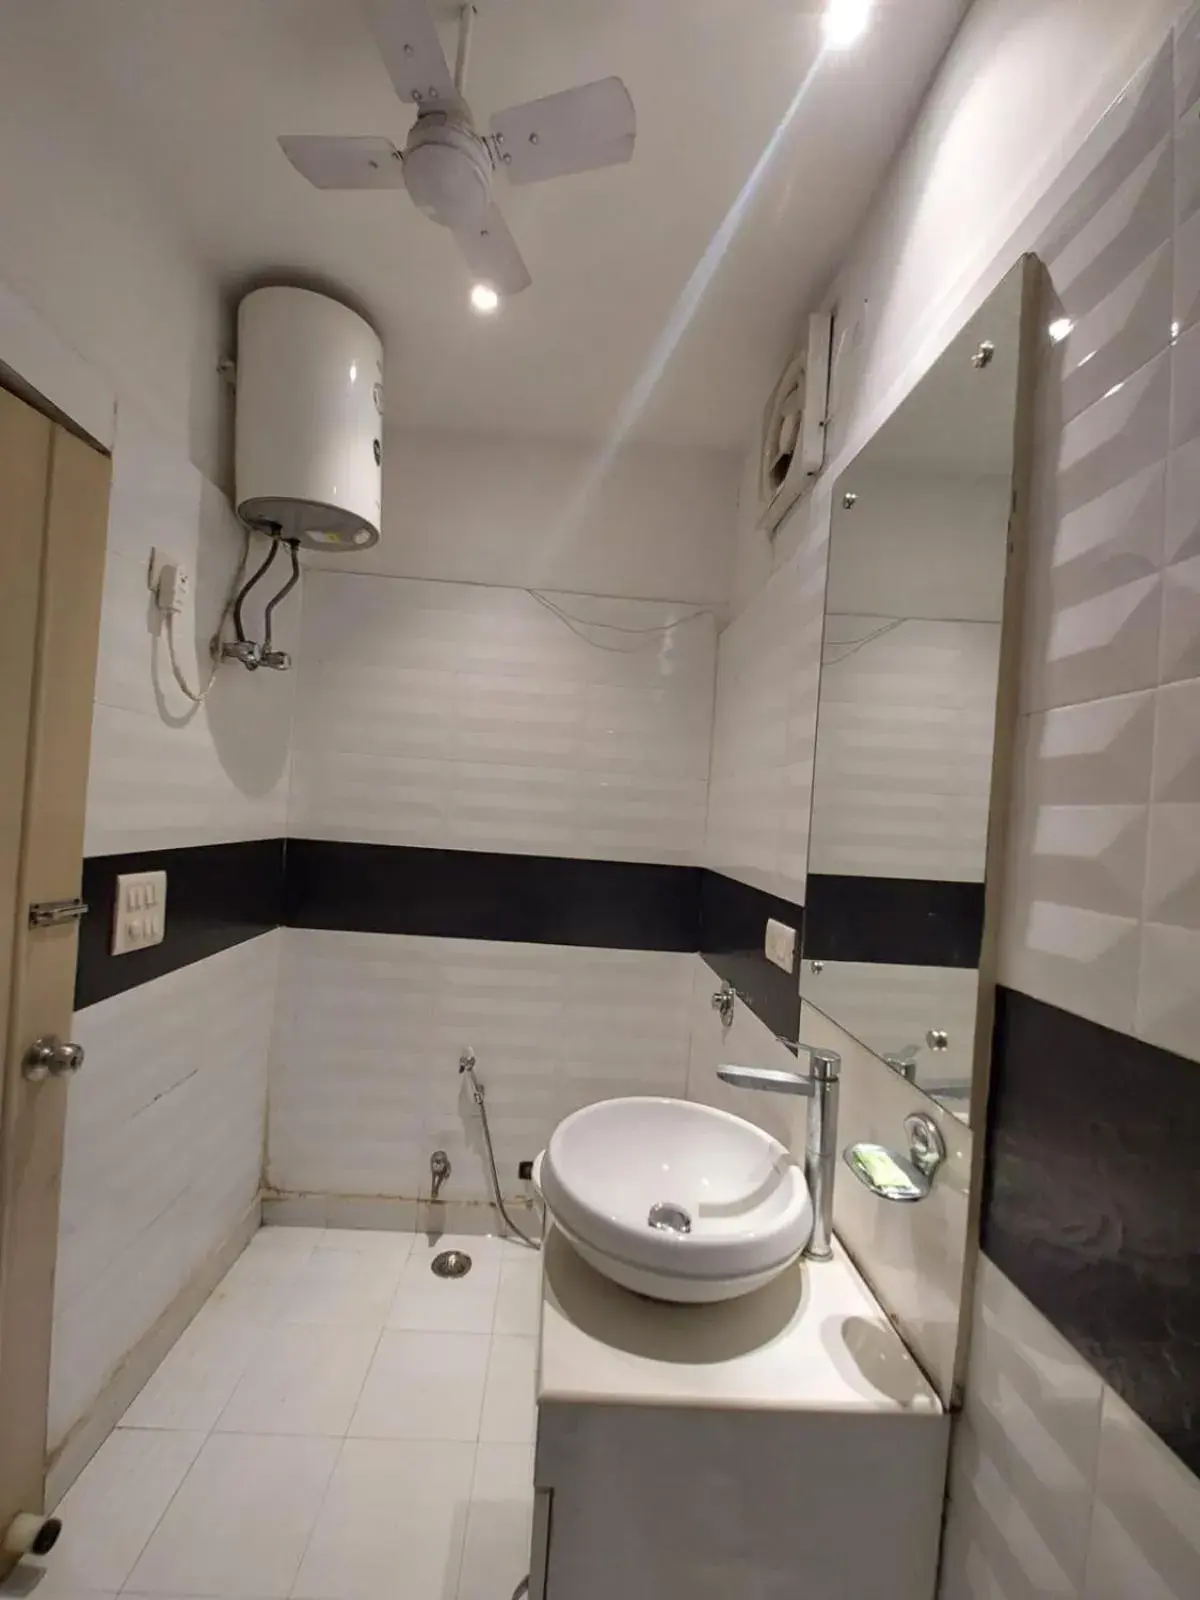 Bathroom in Hotel Shanti Palace West Patel Nagar